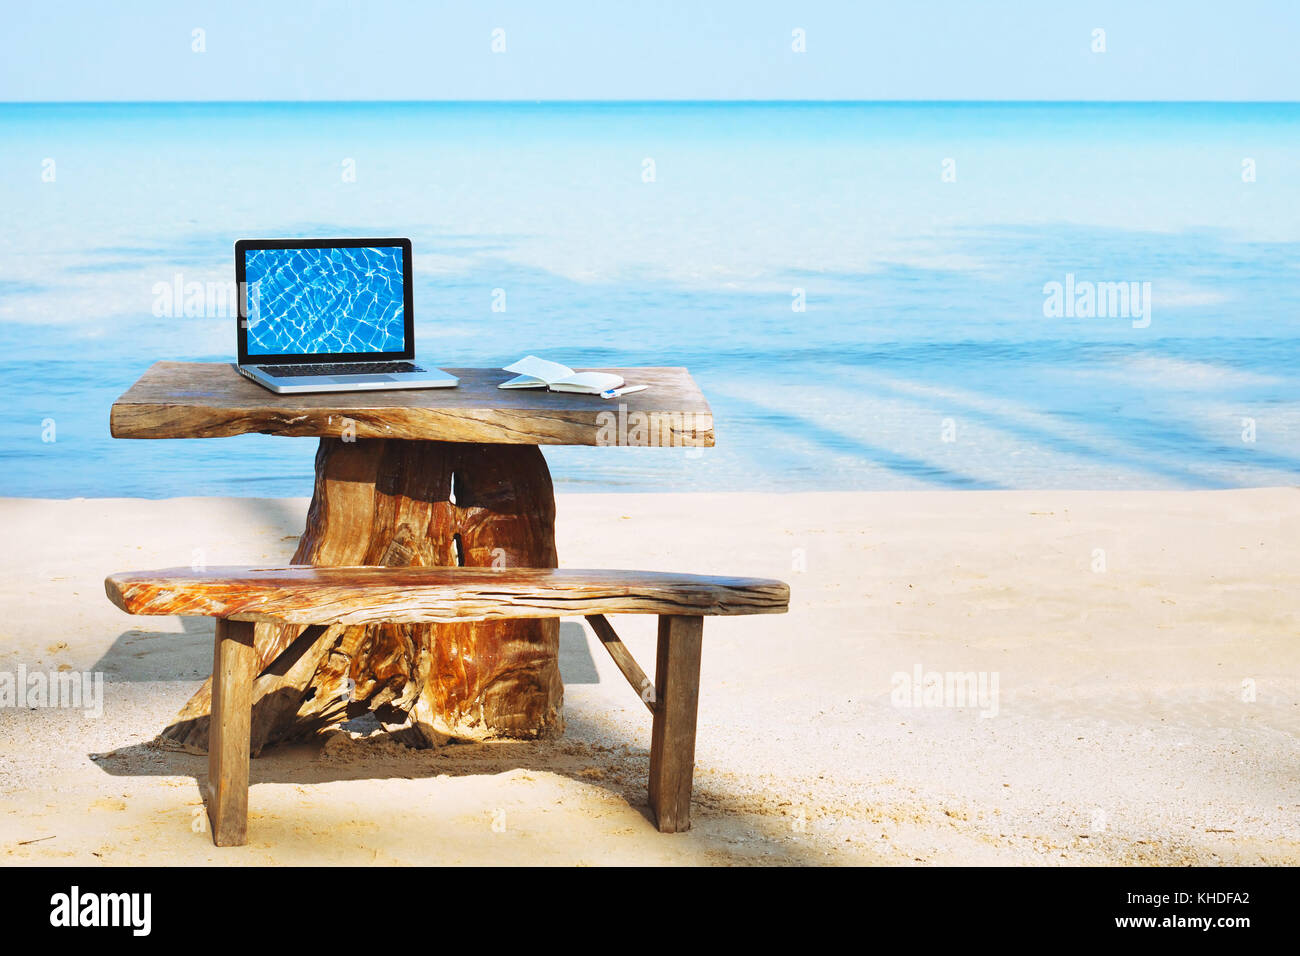 Office de tourisme indépendant sur la plage, ordinateur portable avec écran vide et personne, freelance concept Banque D'Images